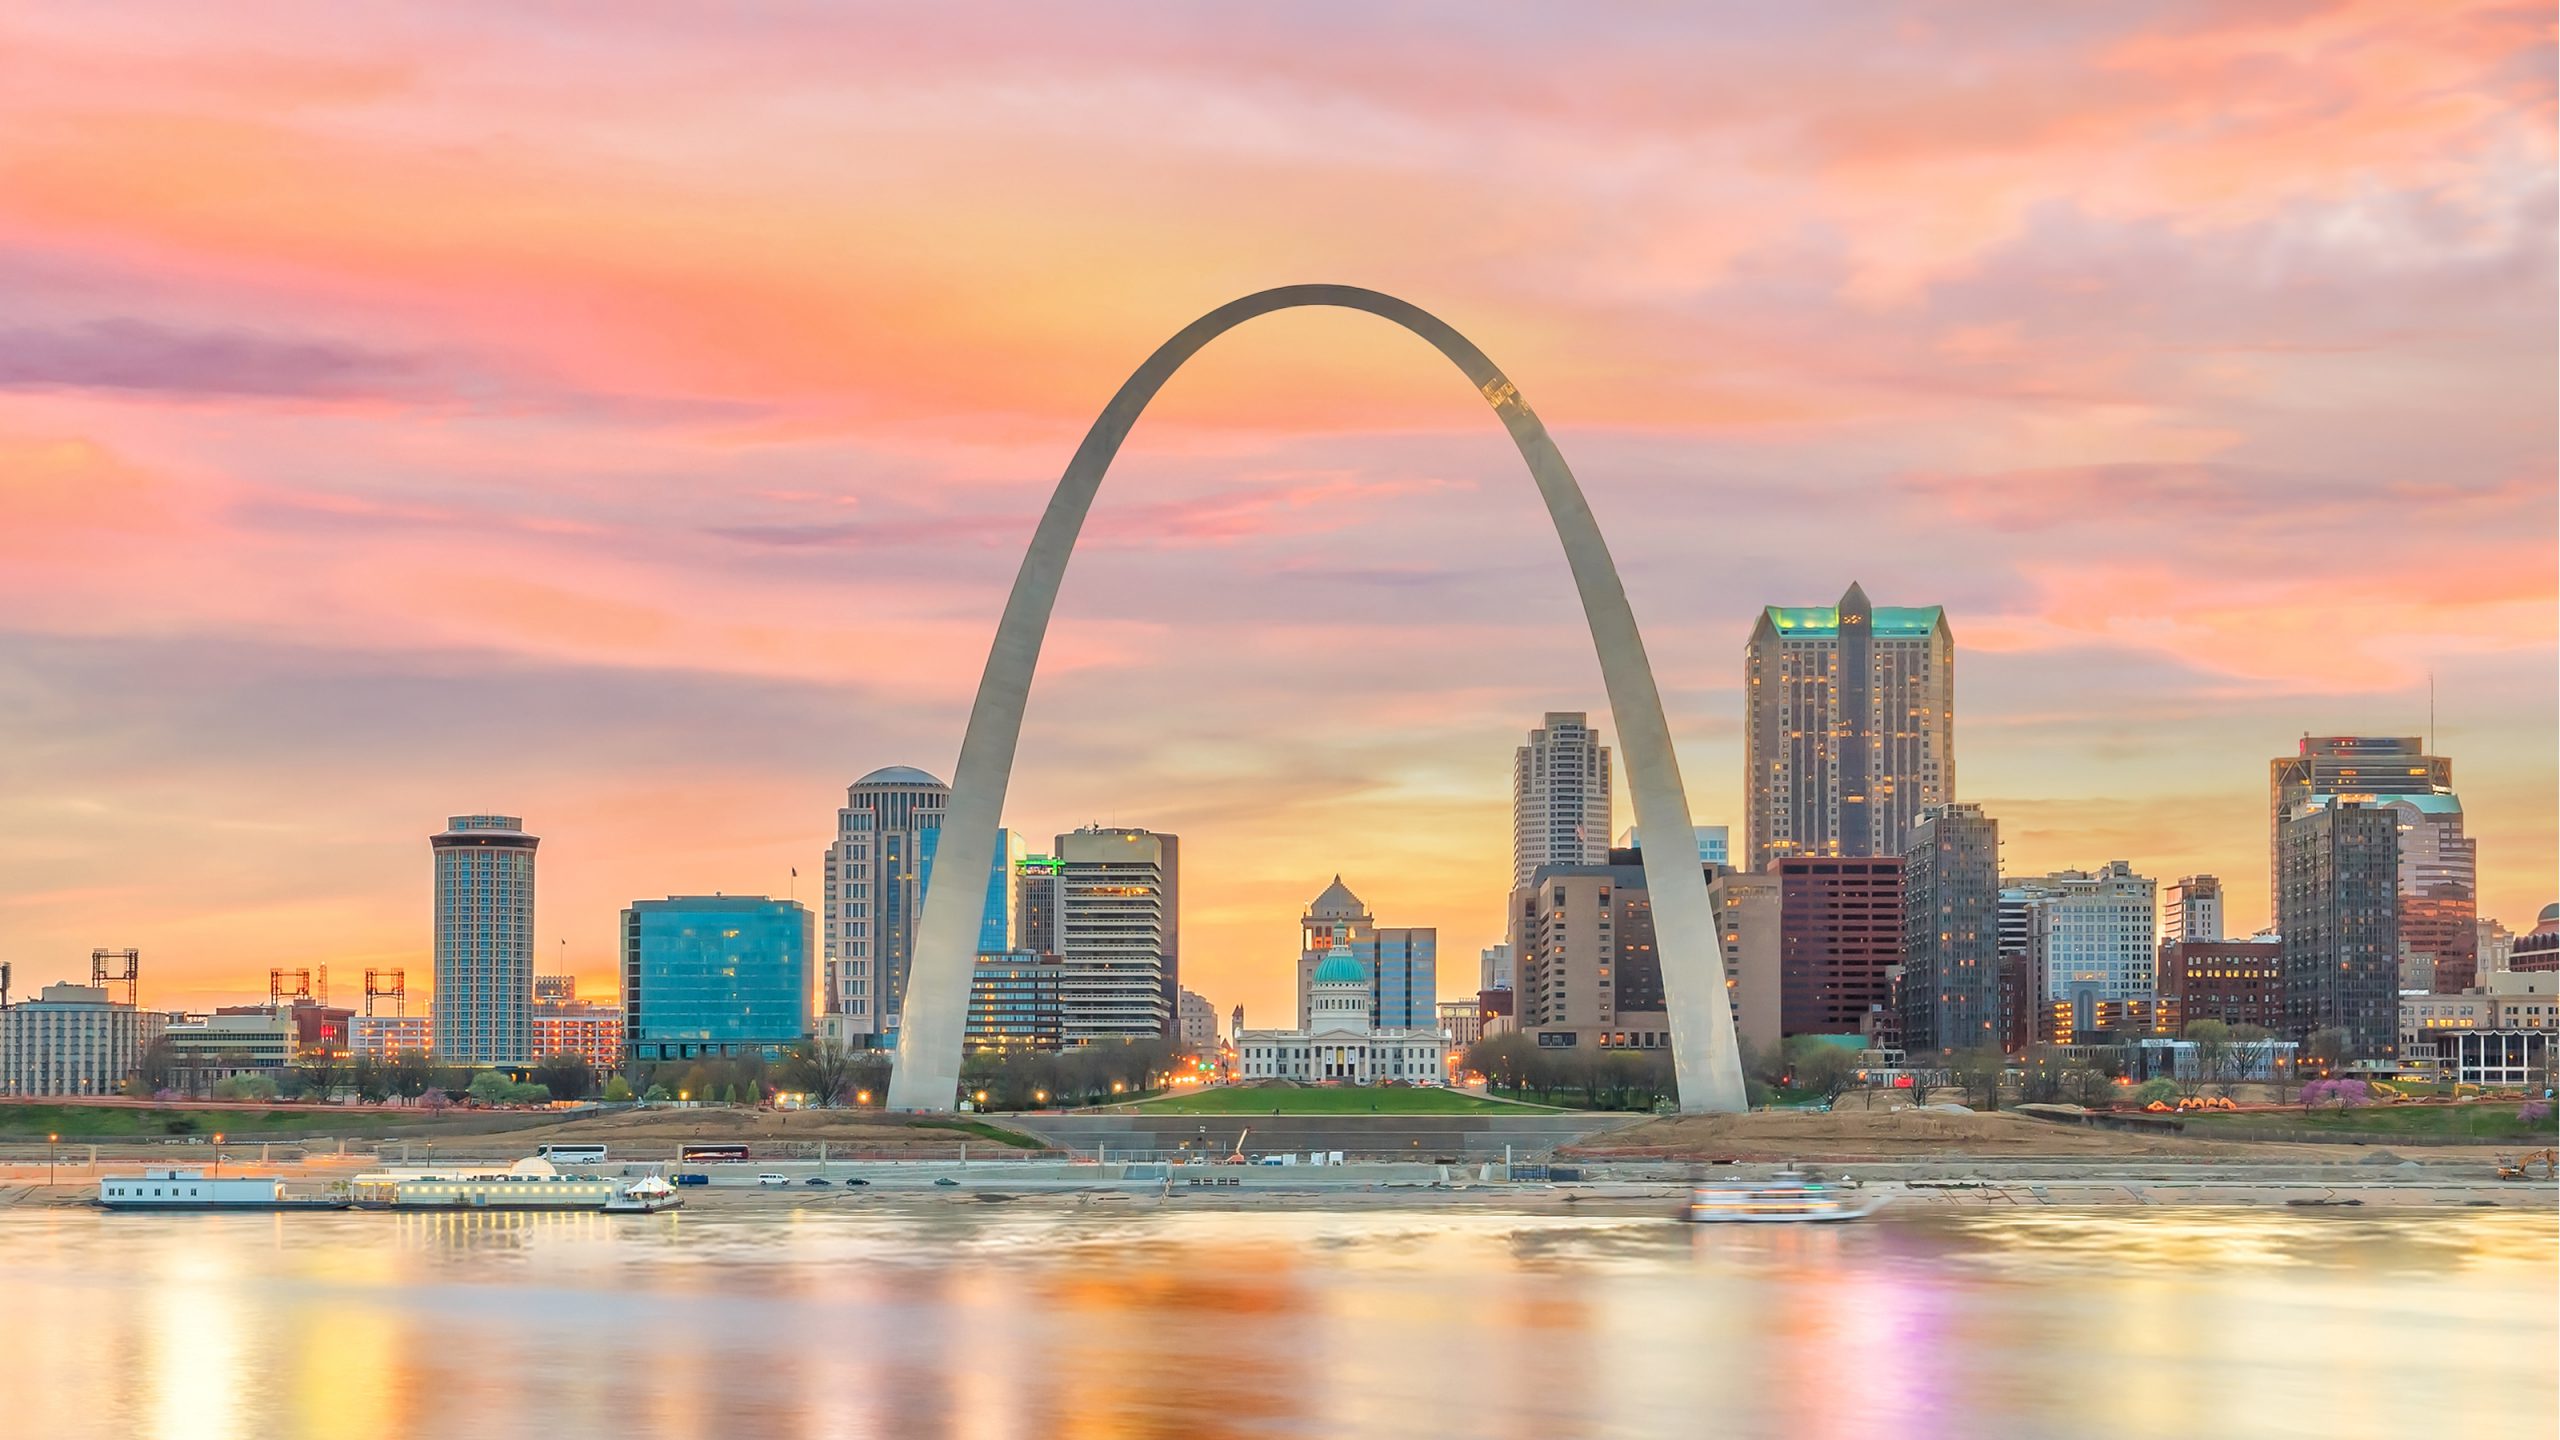 Saint Louis Missouri skyline